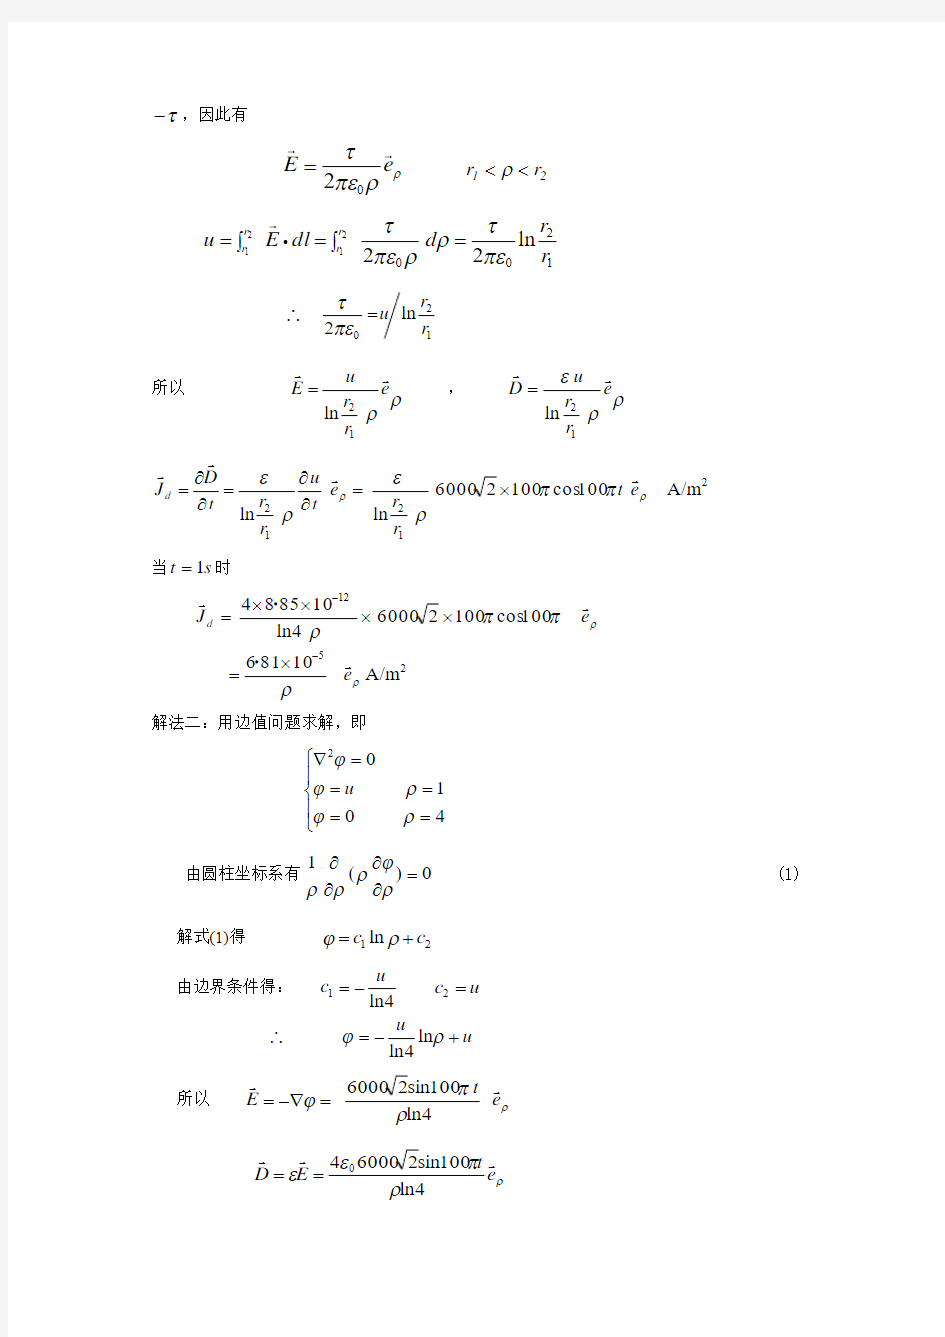 重庆大学电磁场习题答案习题(第5章)